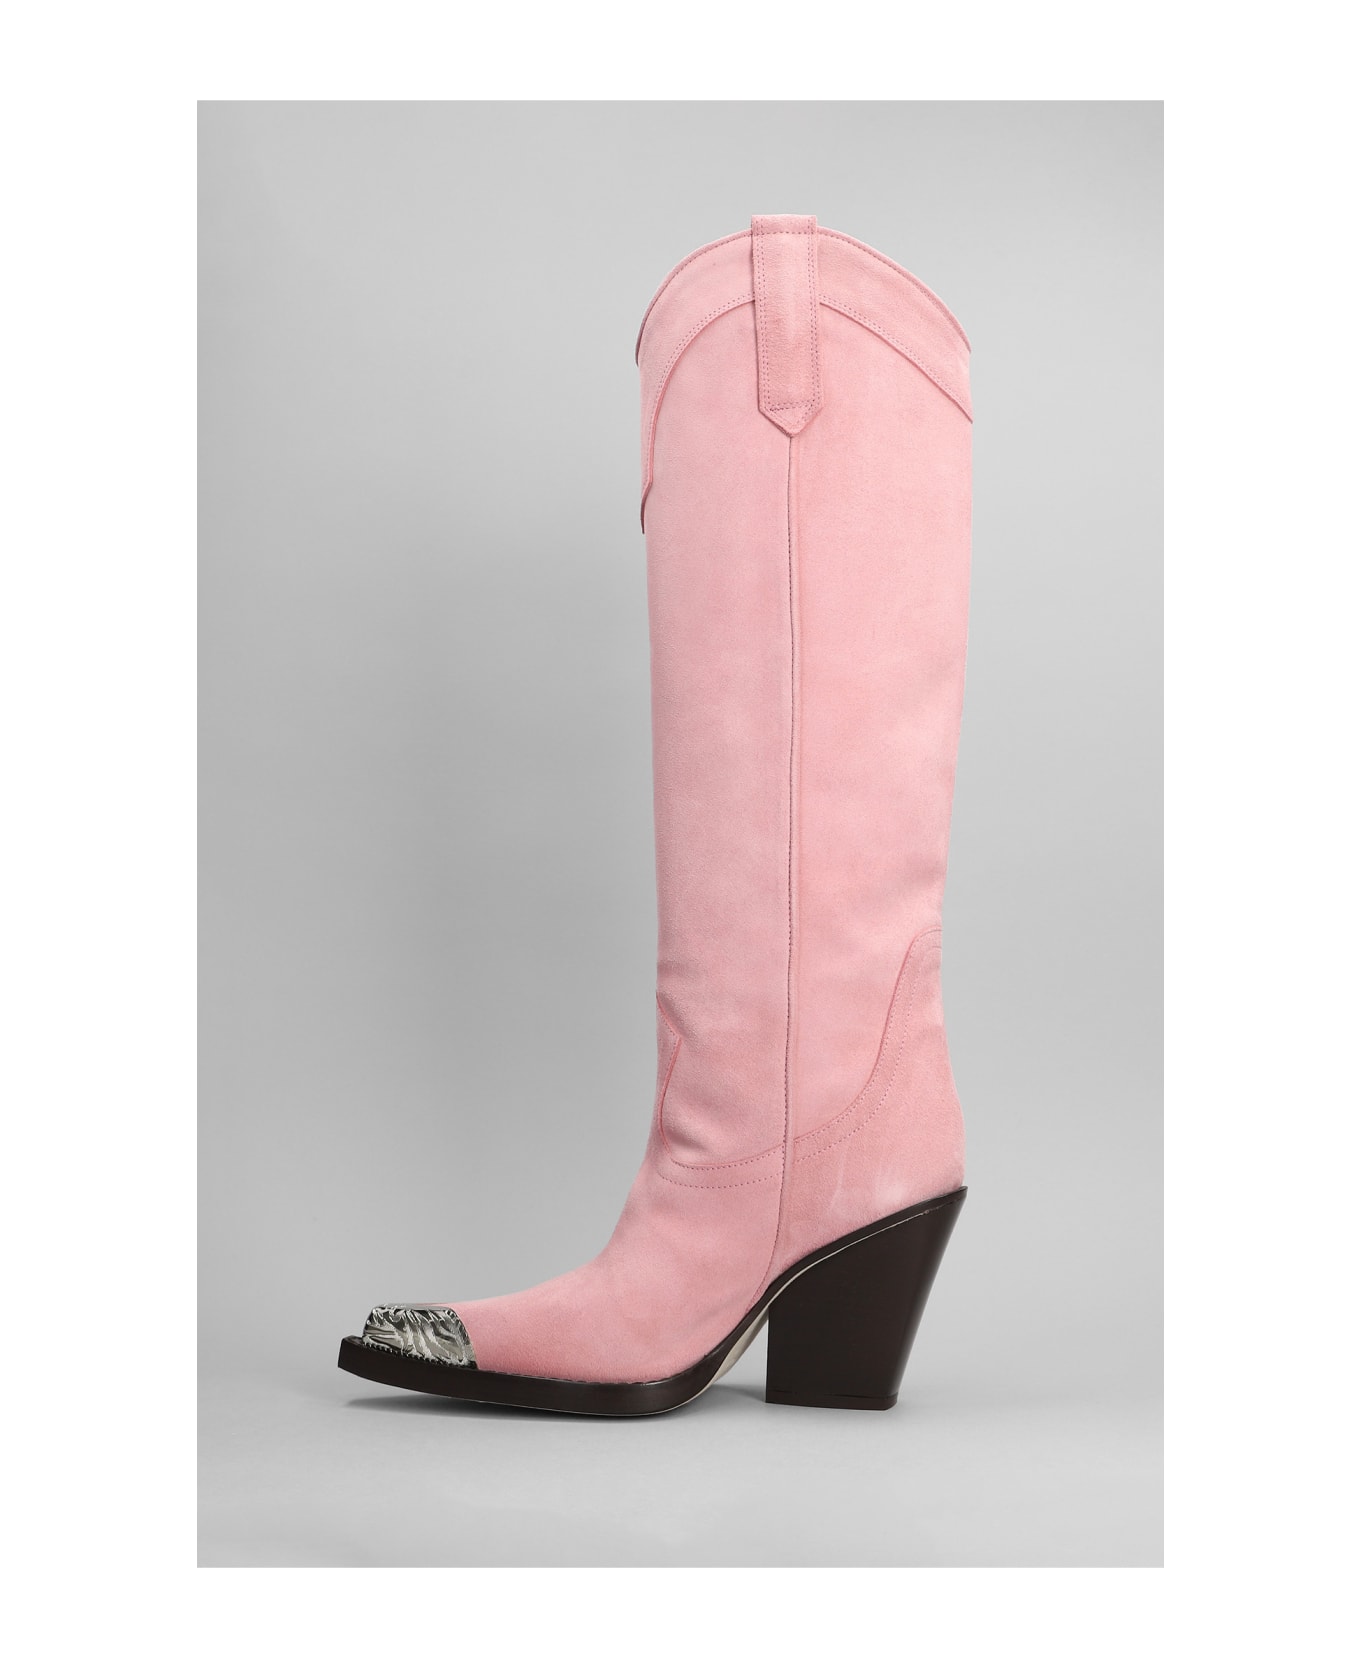 Paris Texas El Dorado Texan Boots In Rose-pink Suede - rose-pink